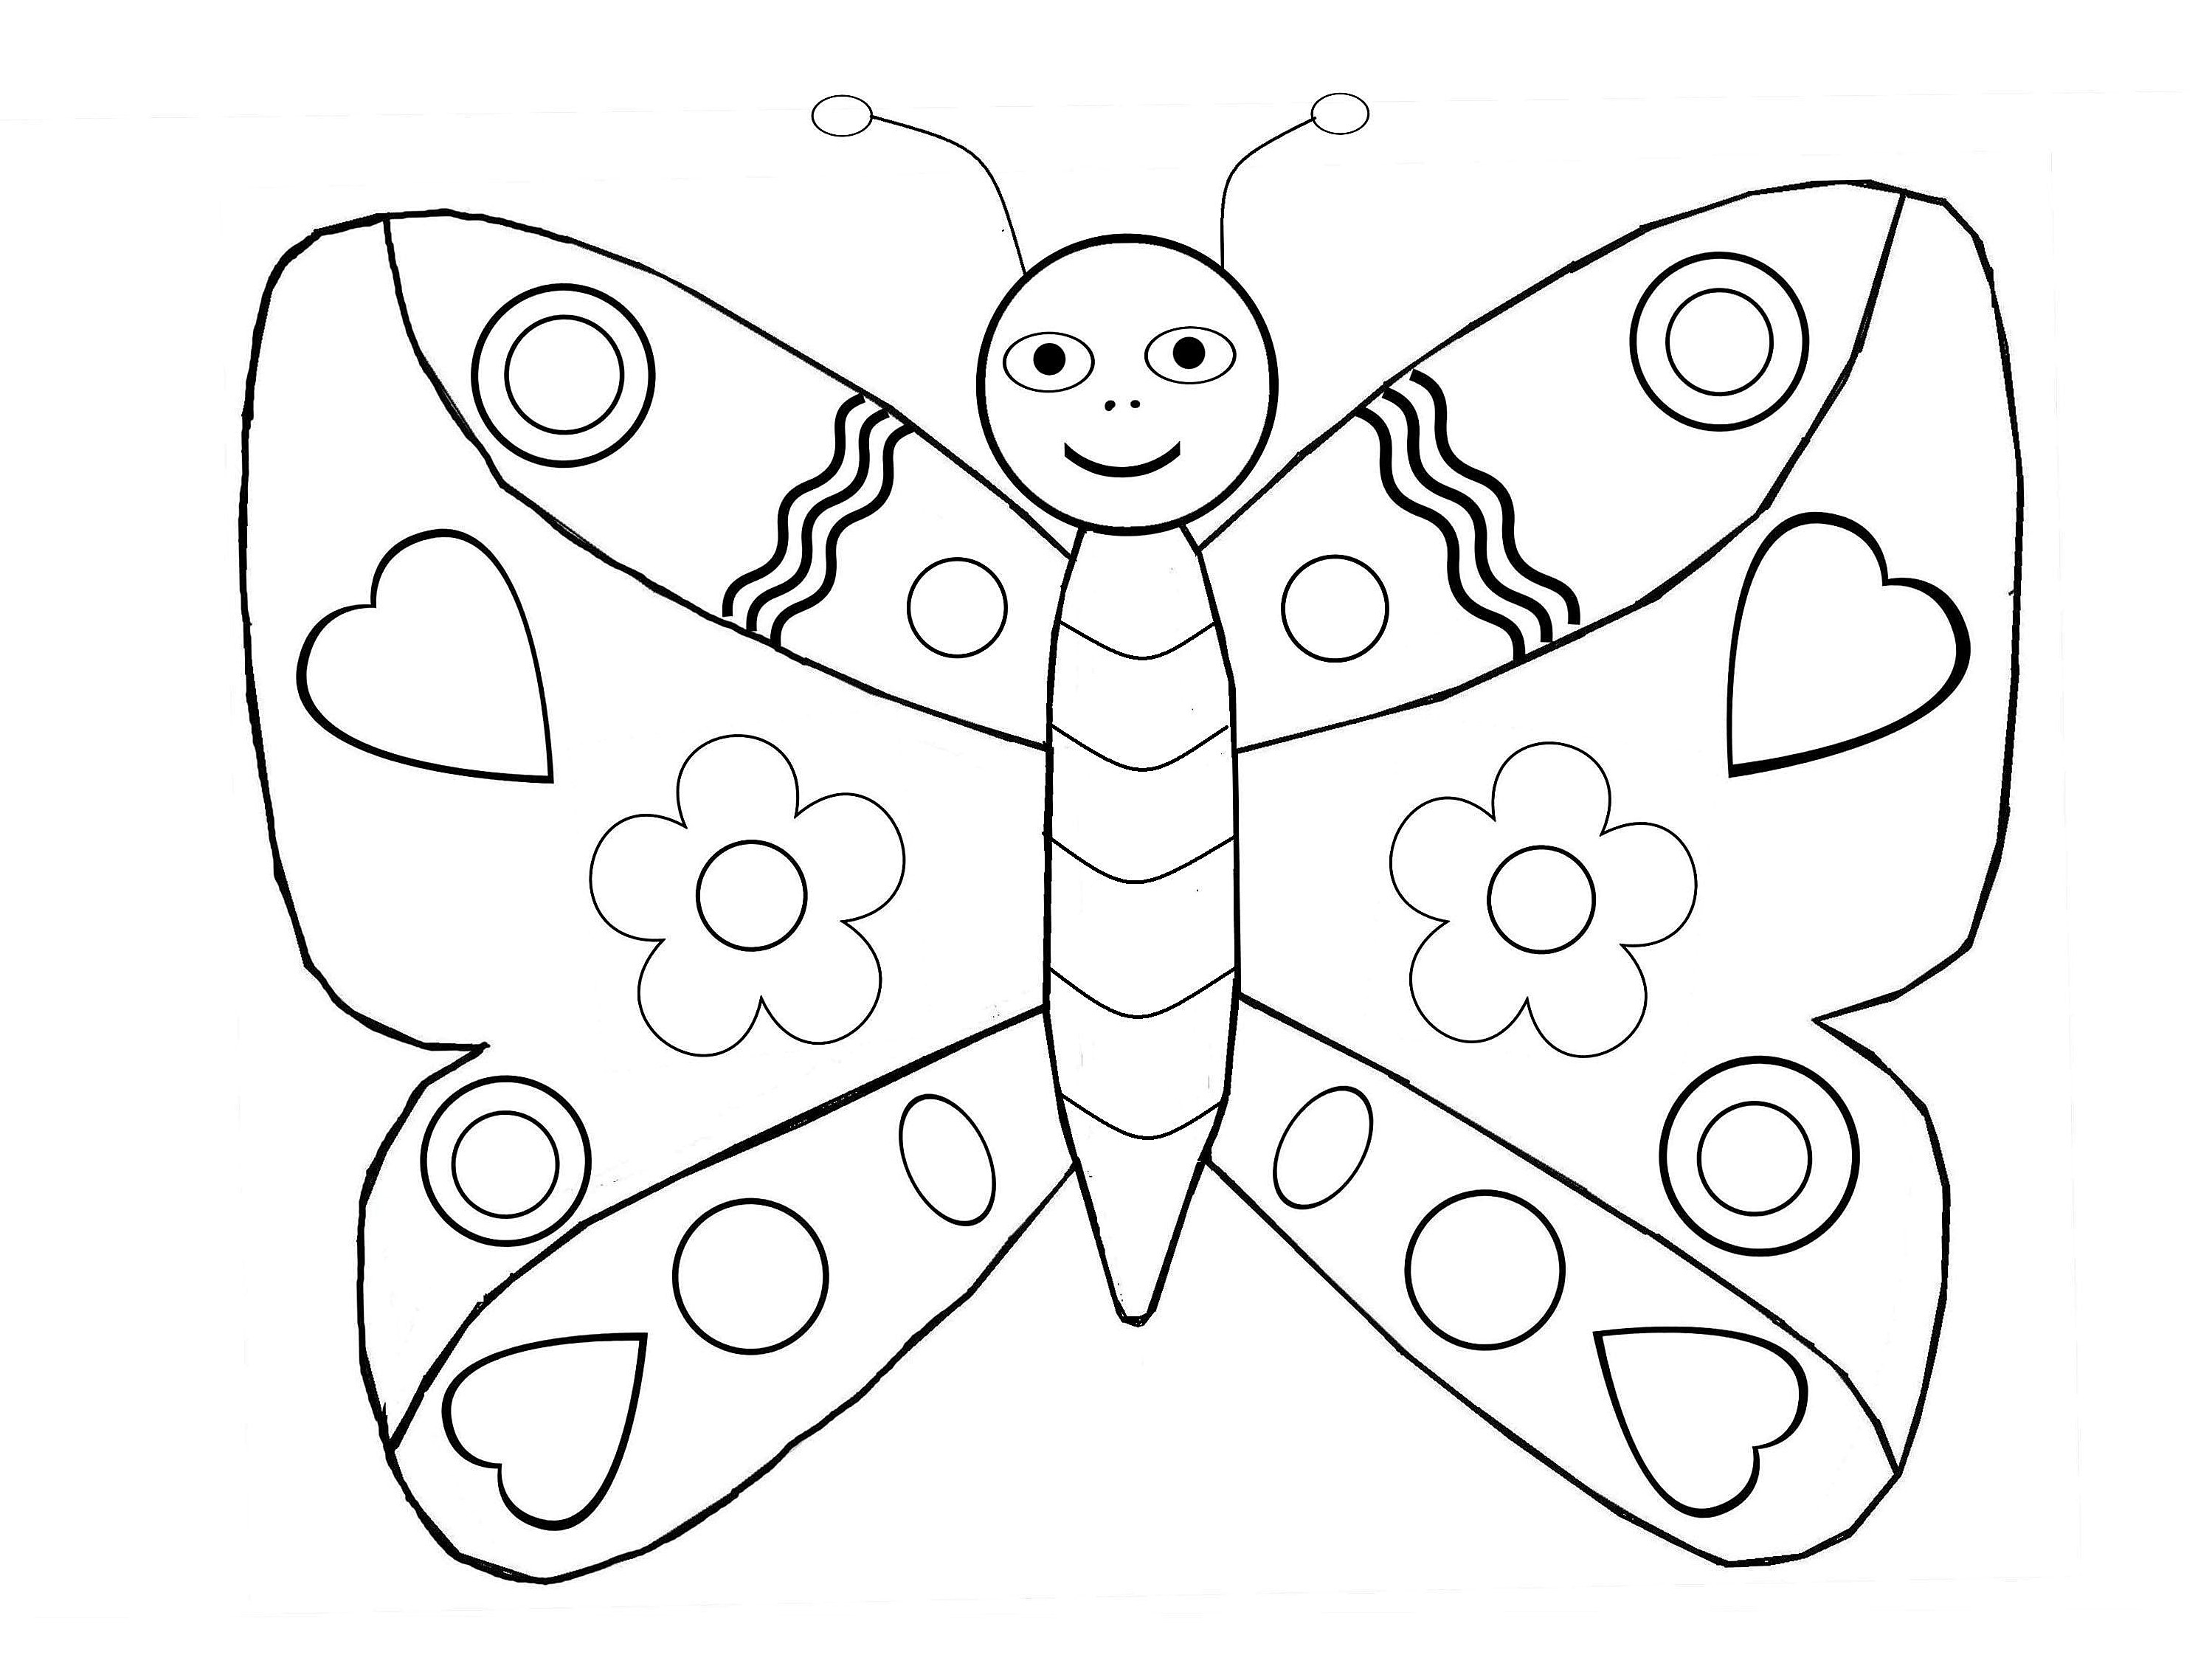 Image de Papillons à colorier, facile pour enfants